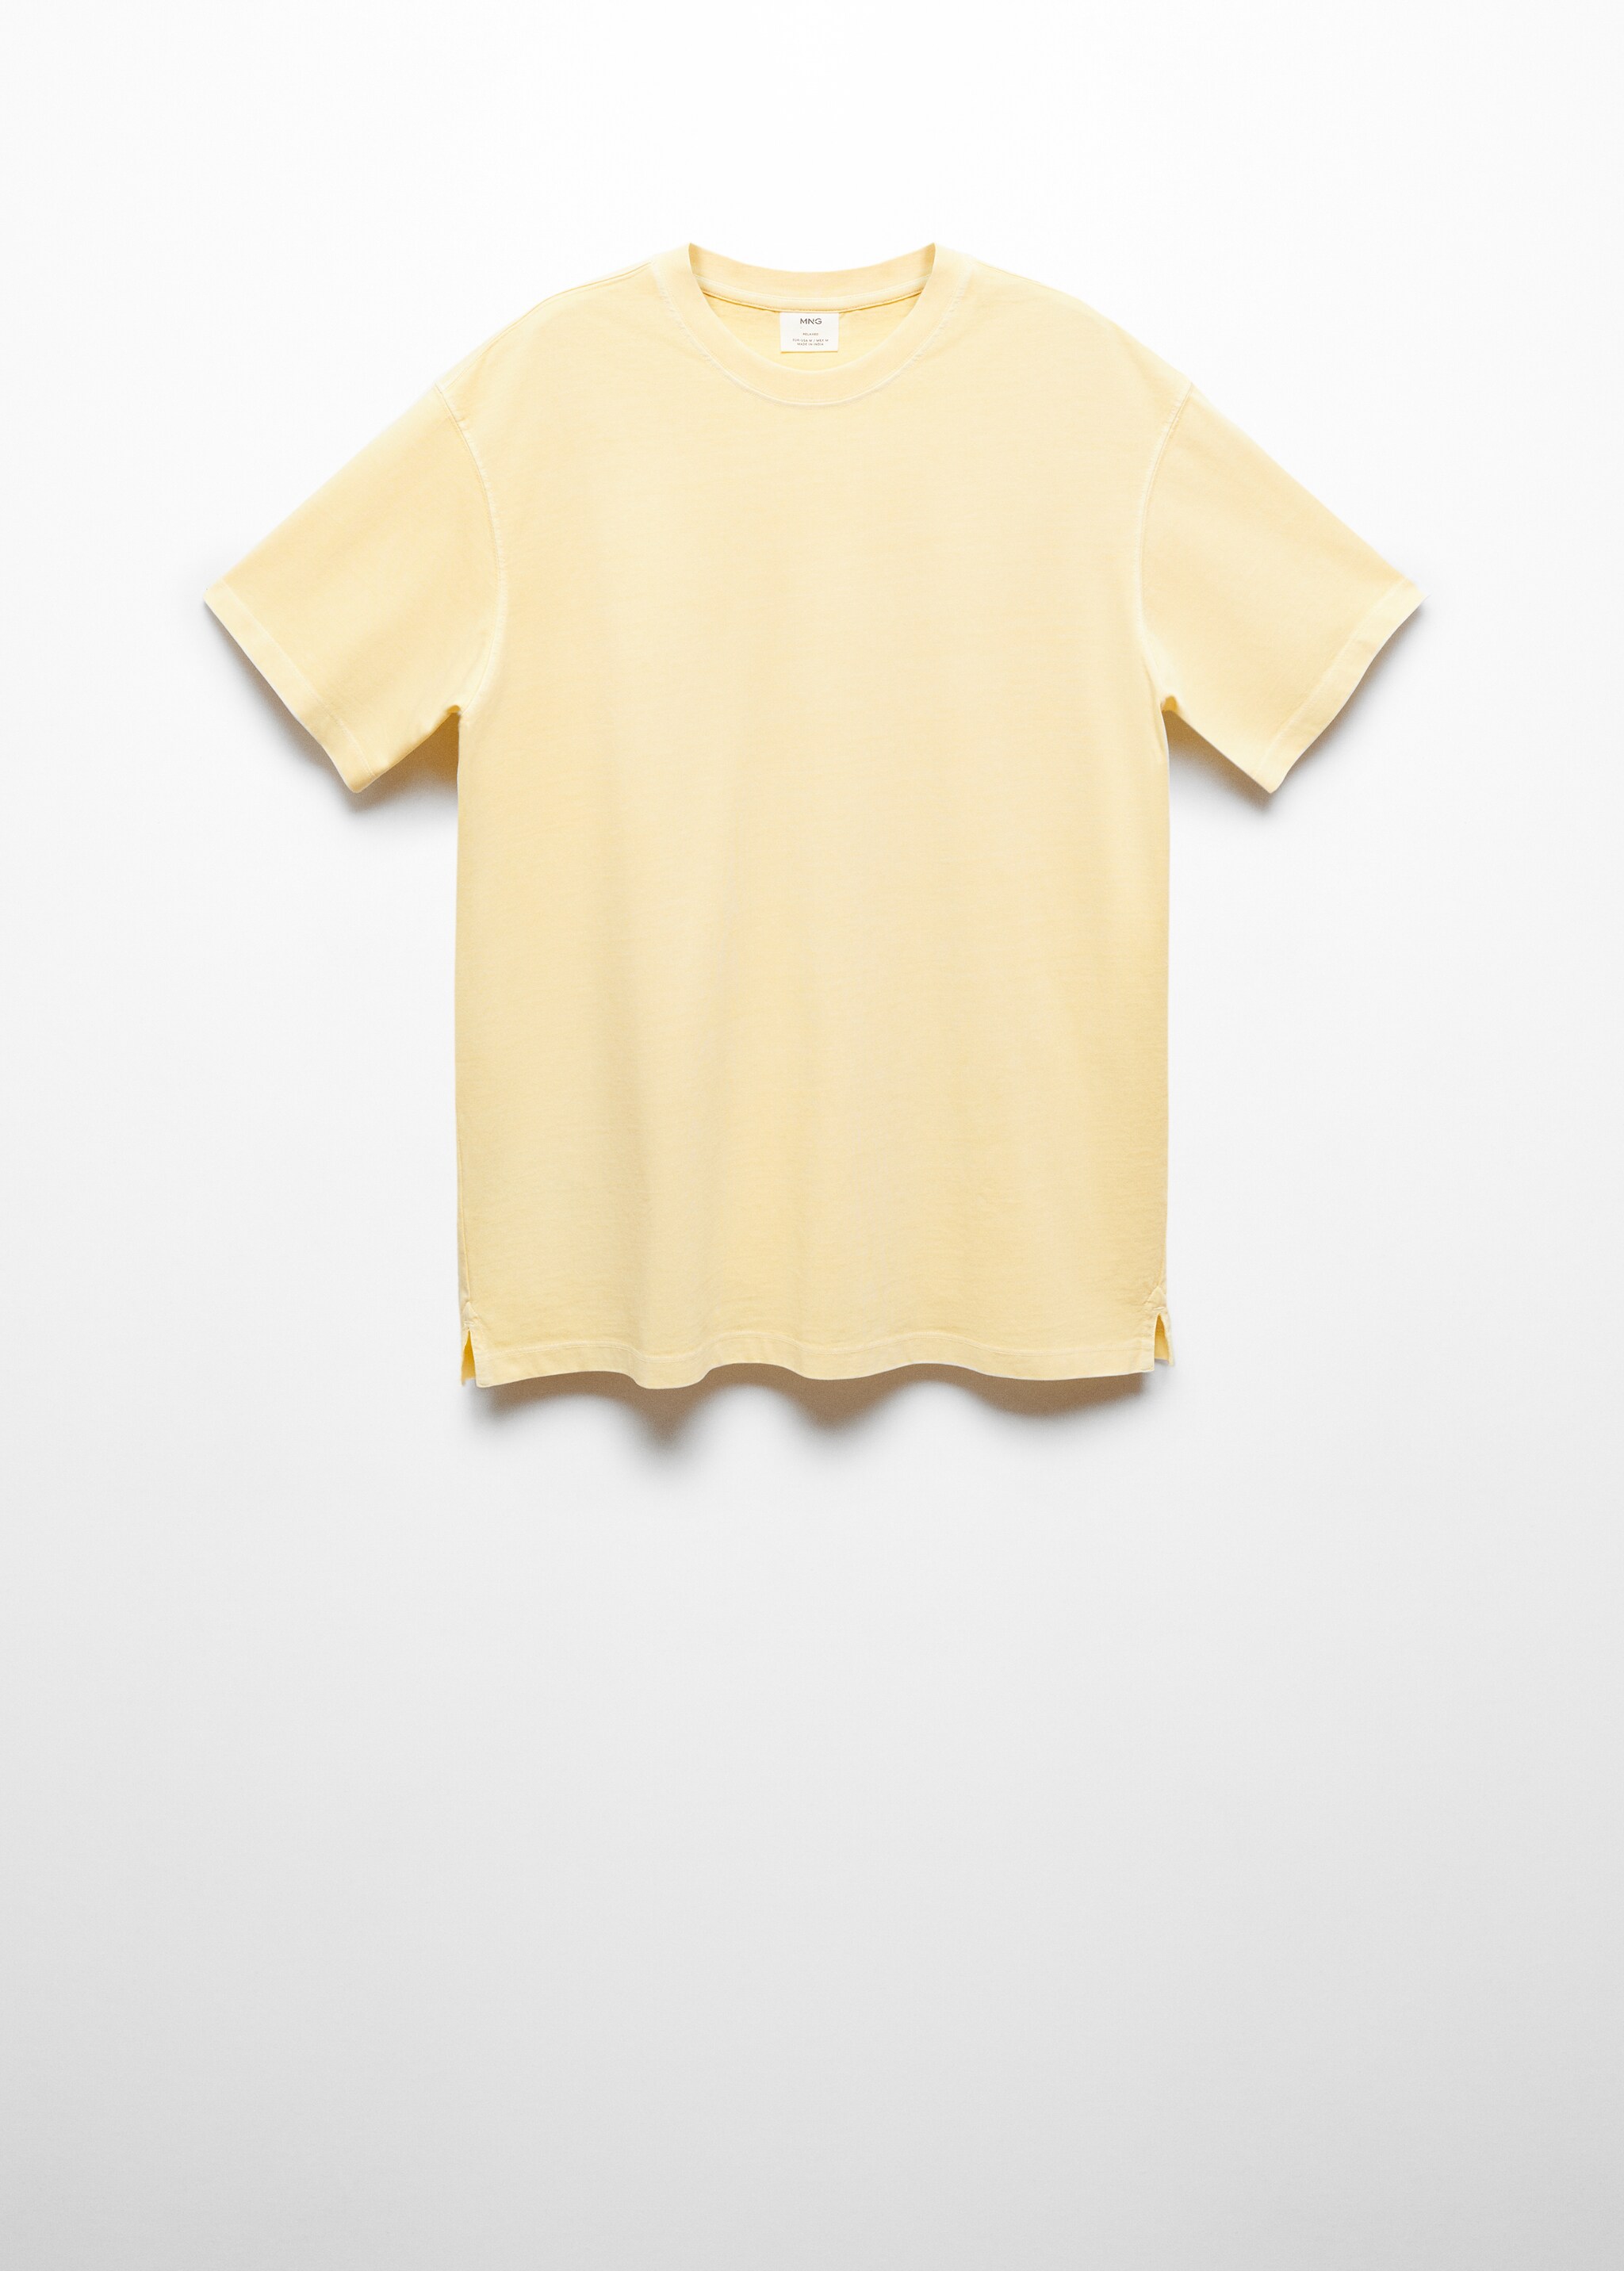 Maglietta 100% cotone relaxed-fit - Articolo senza modello